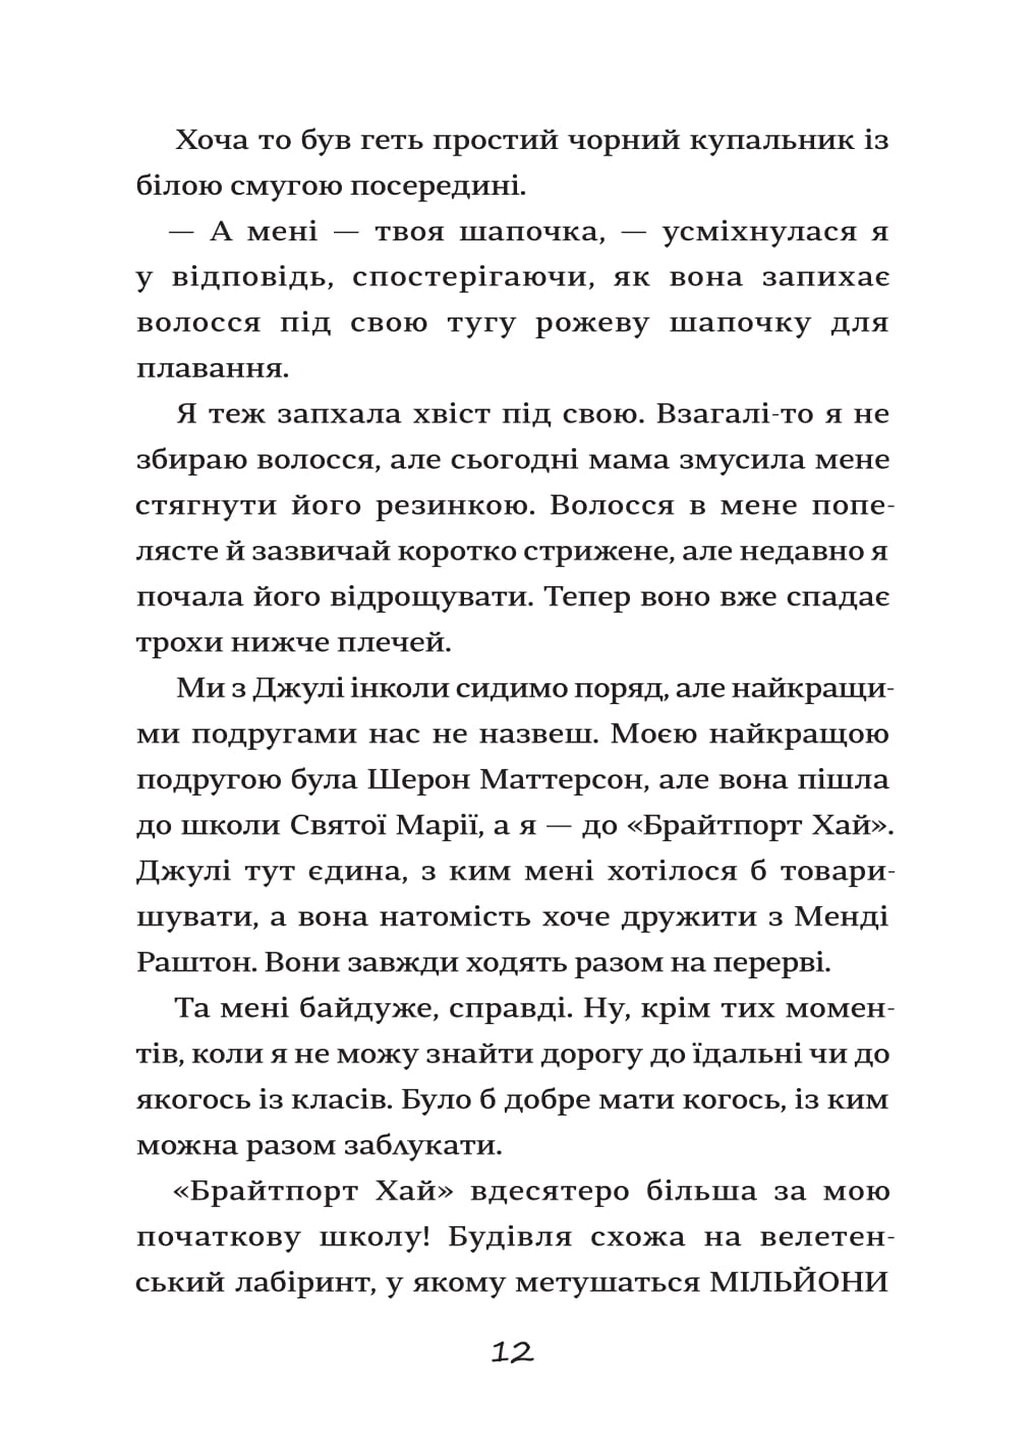 Хвісторія Емілі Віндснеп - Ліз Кесслер Книголав (258288615)